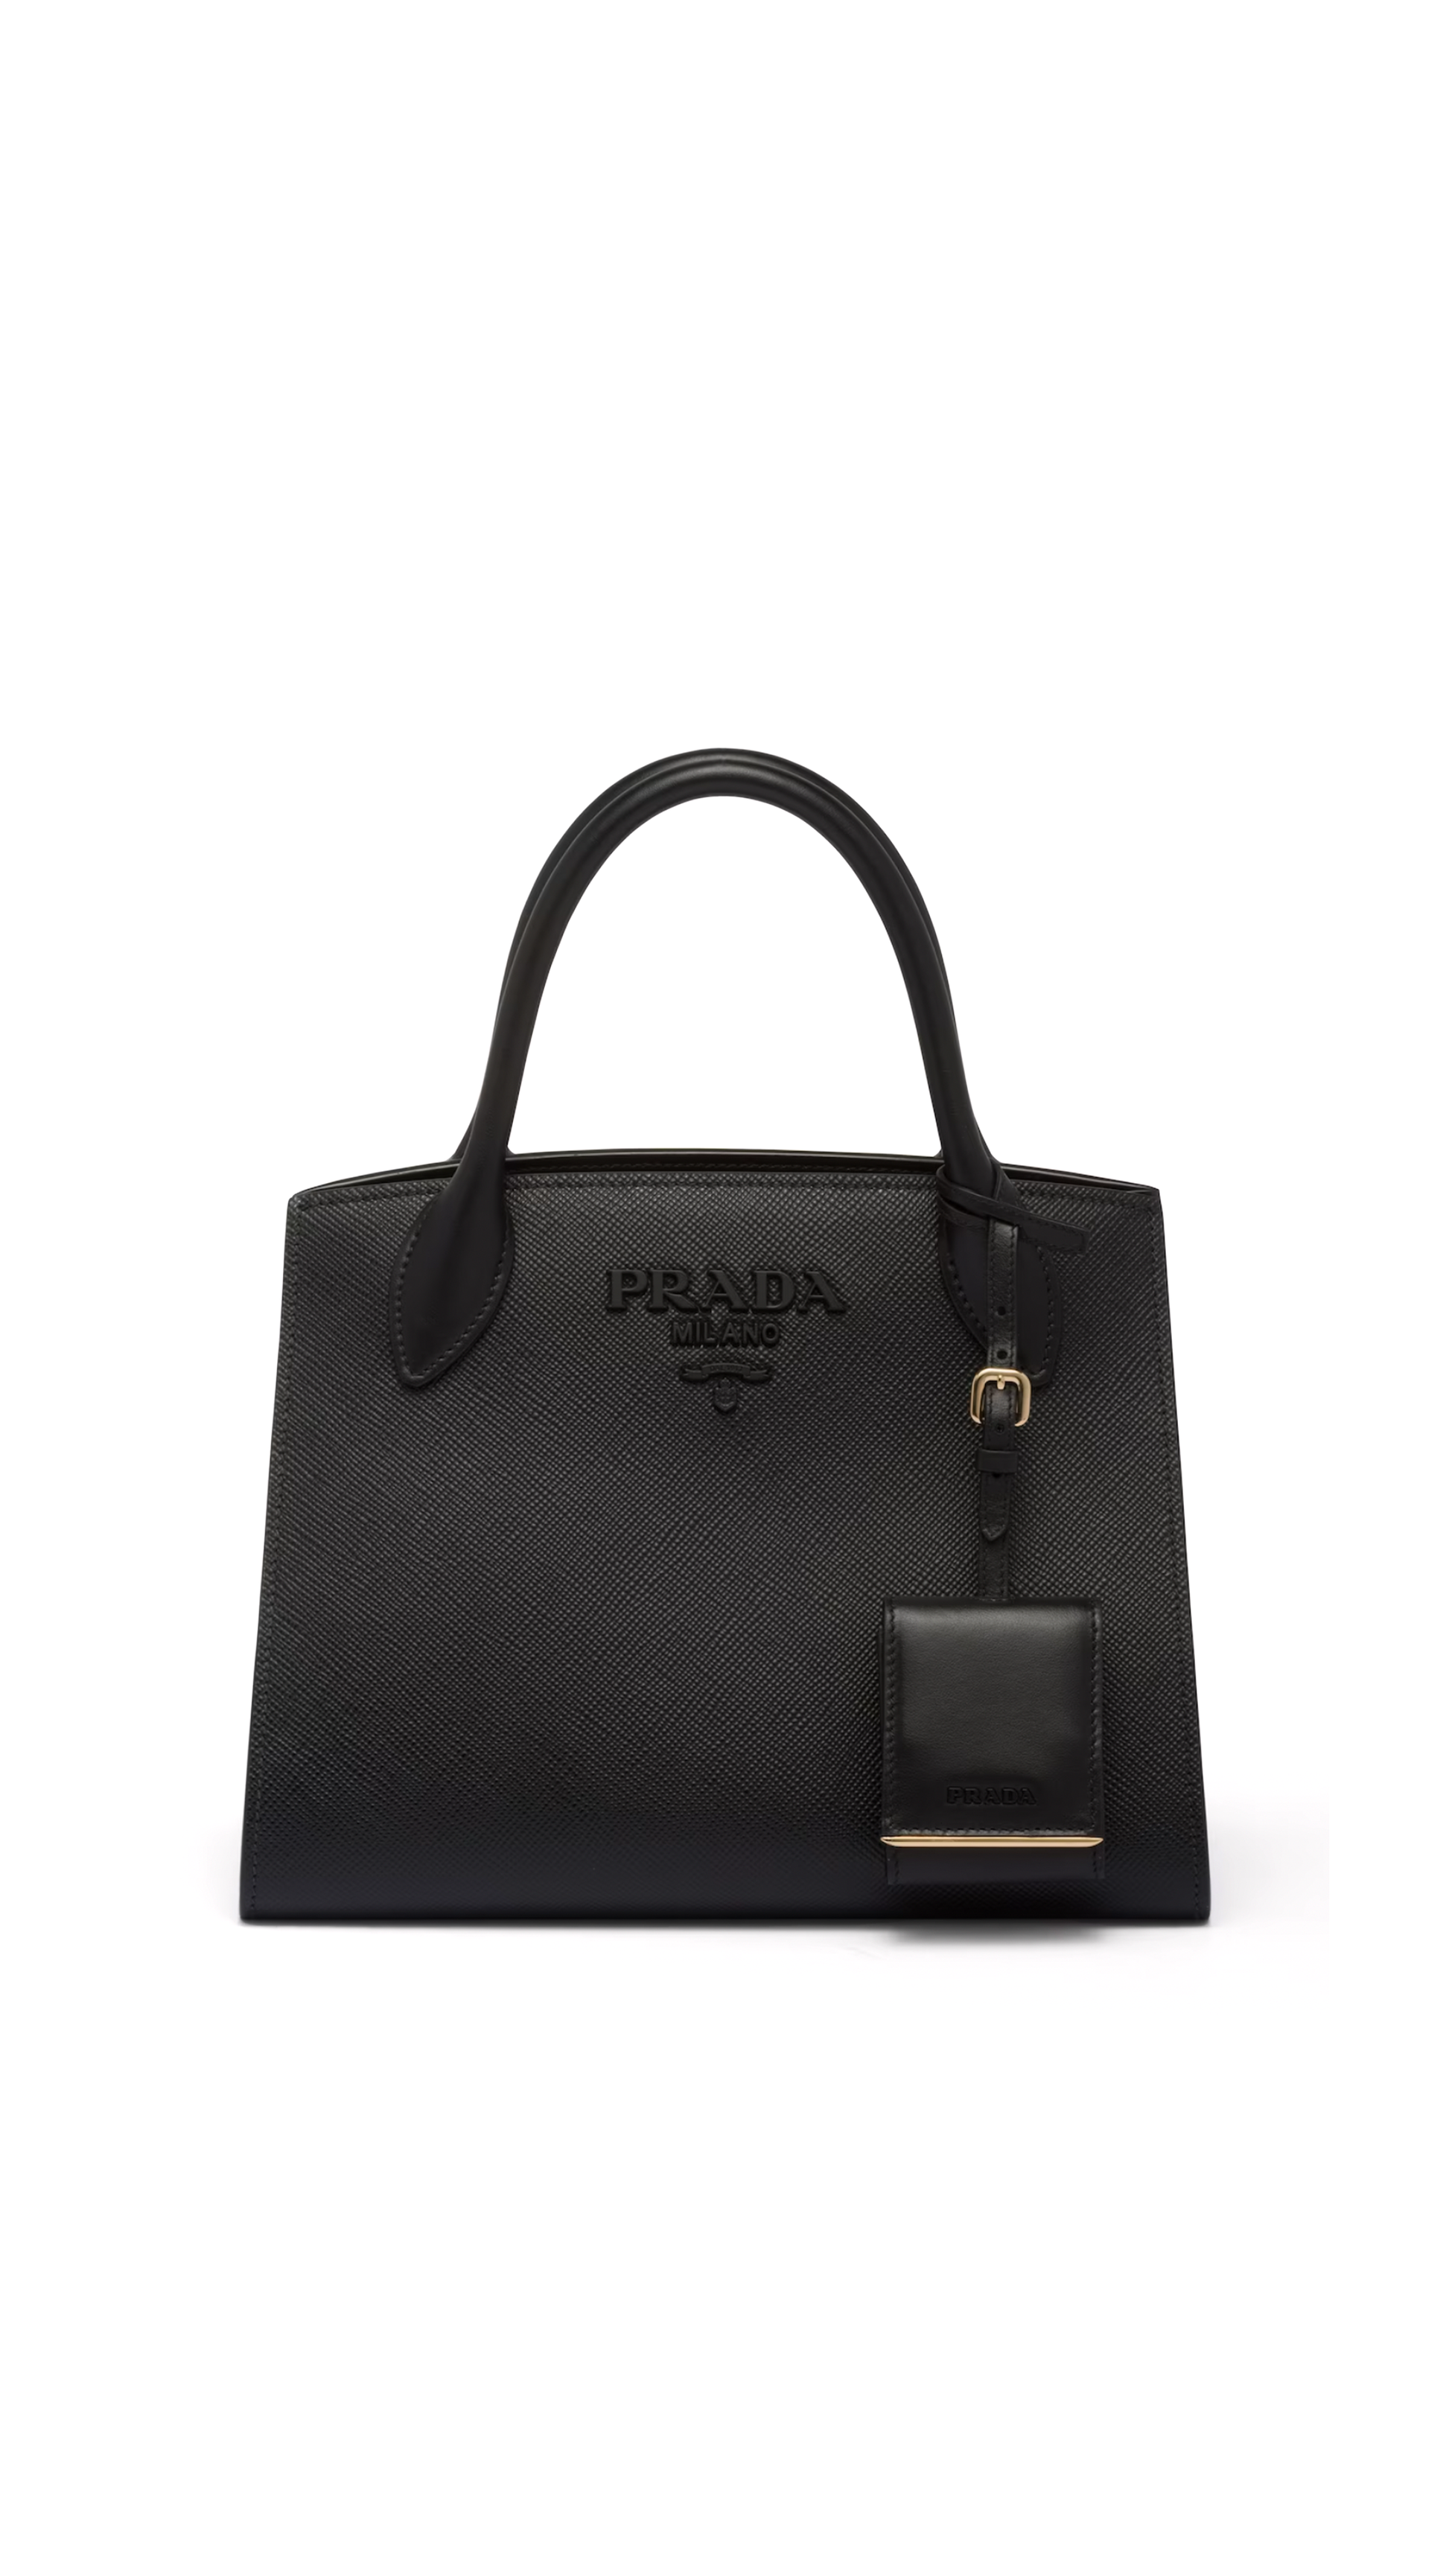 Prada Monochrome Small Saffiano Bag - Black